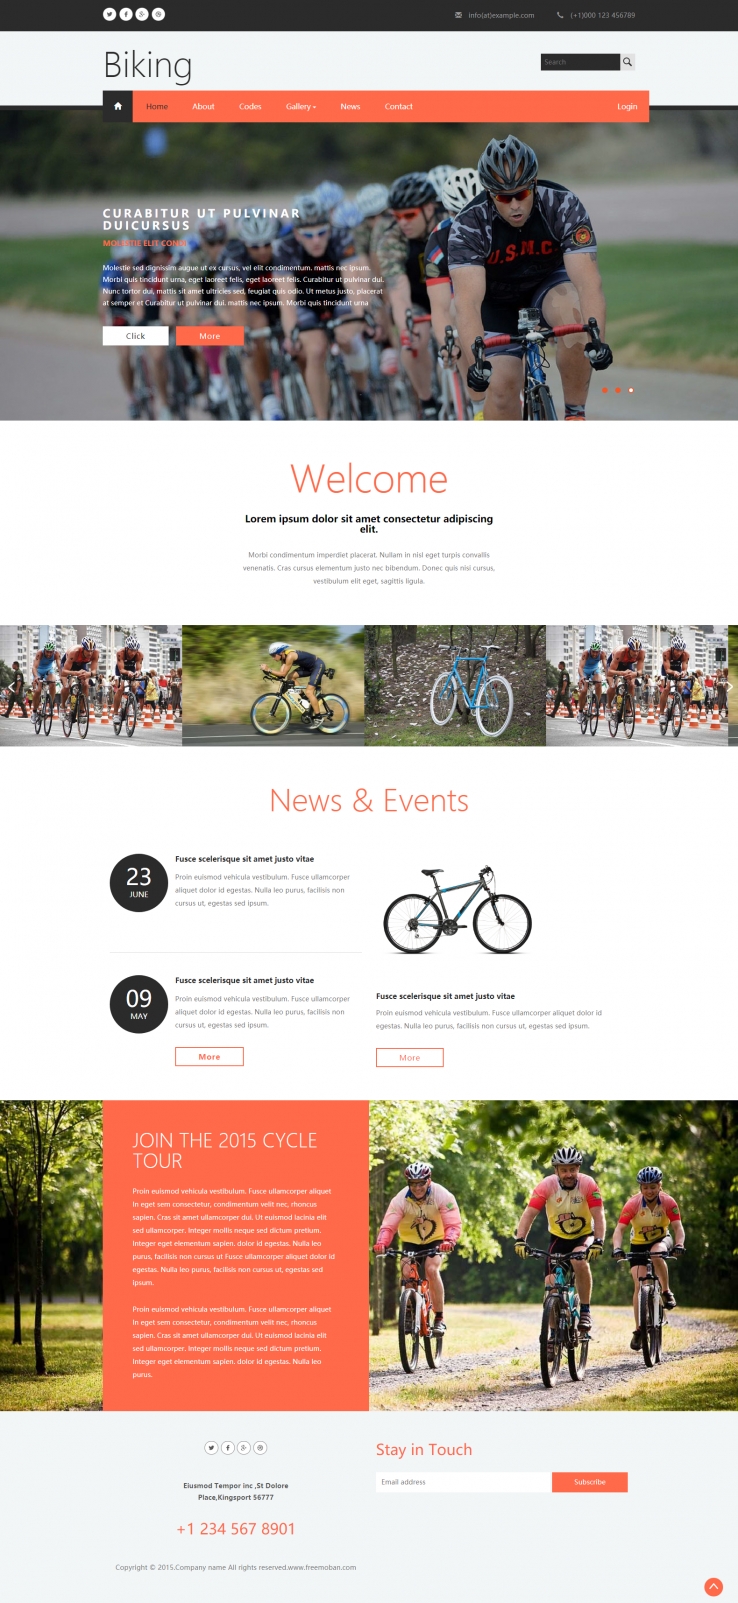 红色简洁风格的单车骑行比赛企业网站模板